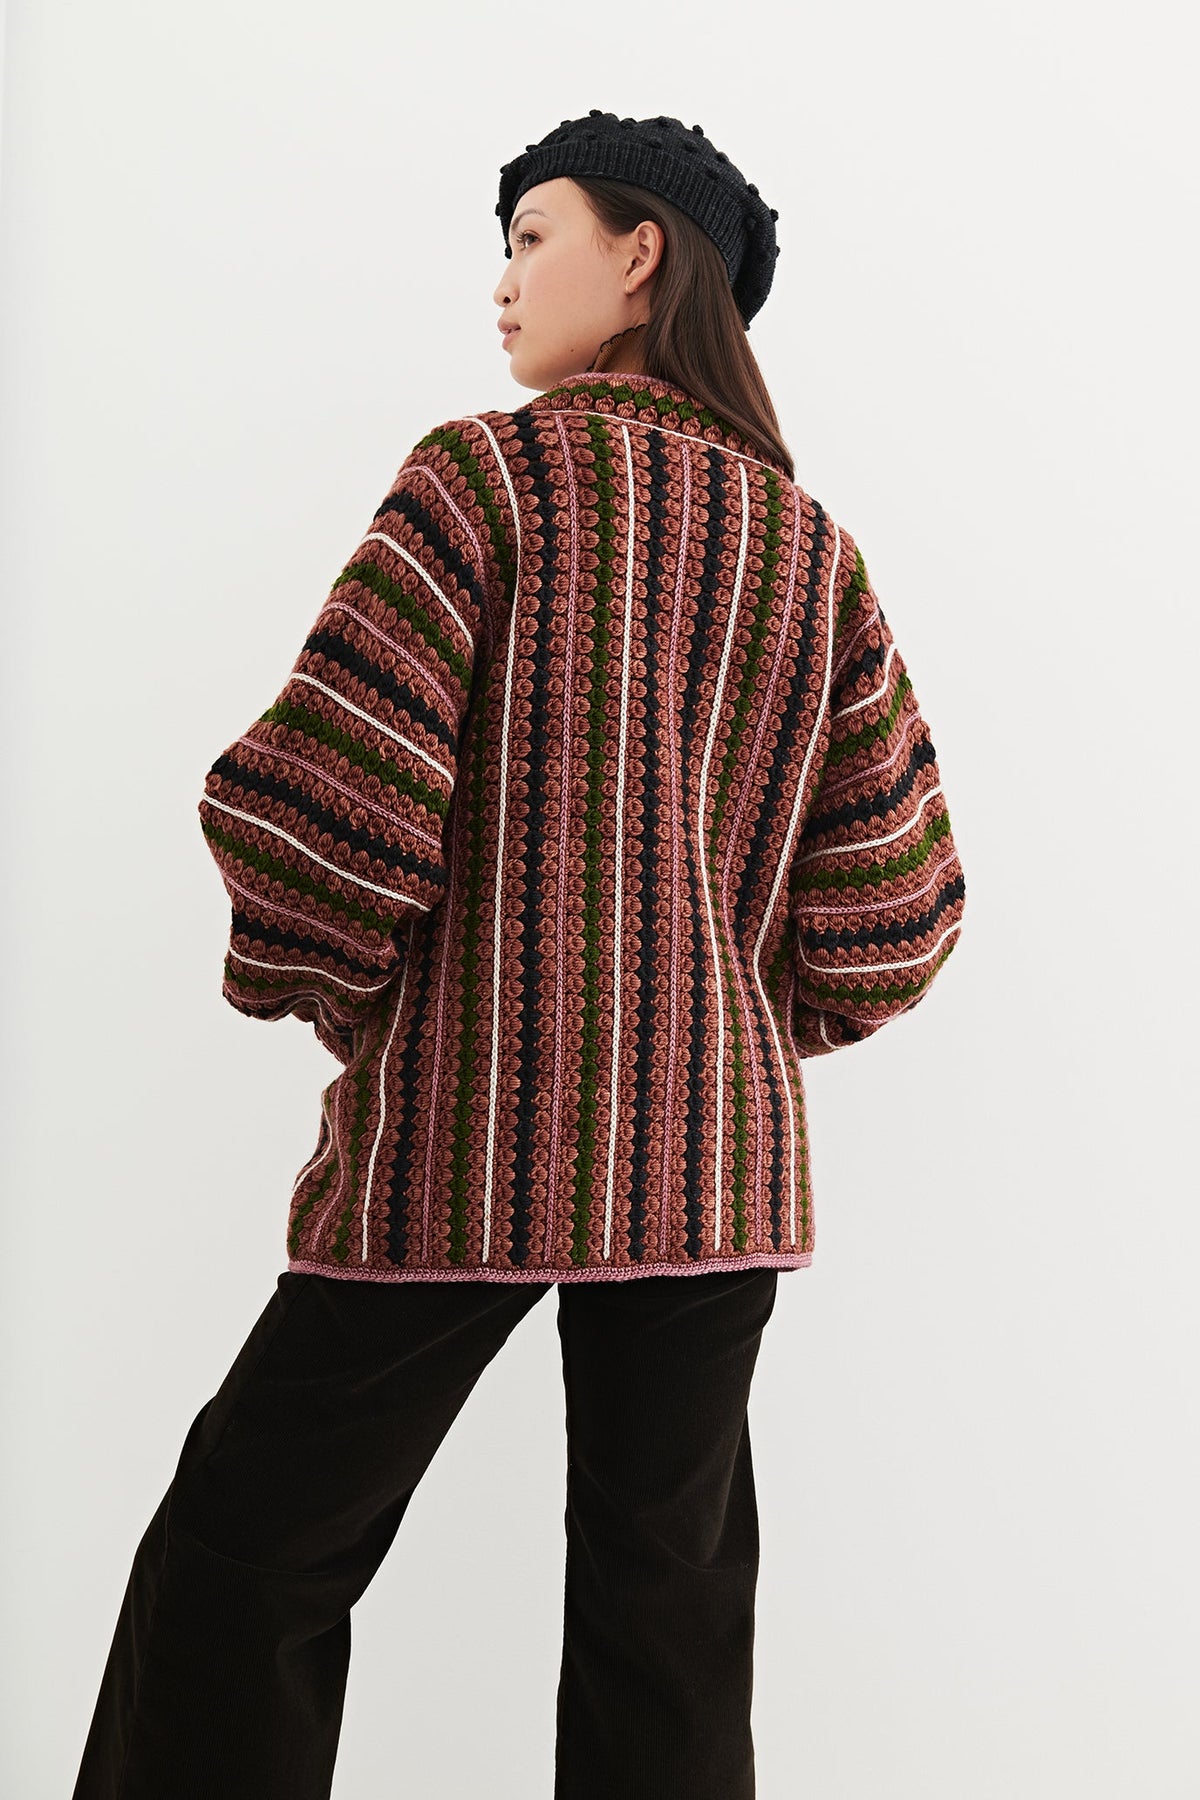 Adult Crochet Jacket